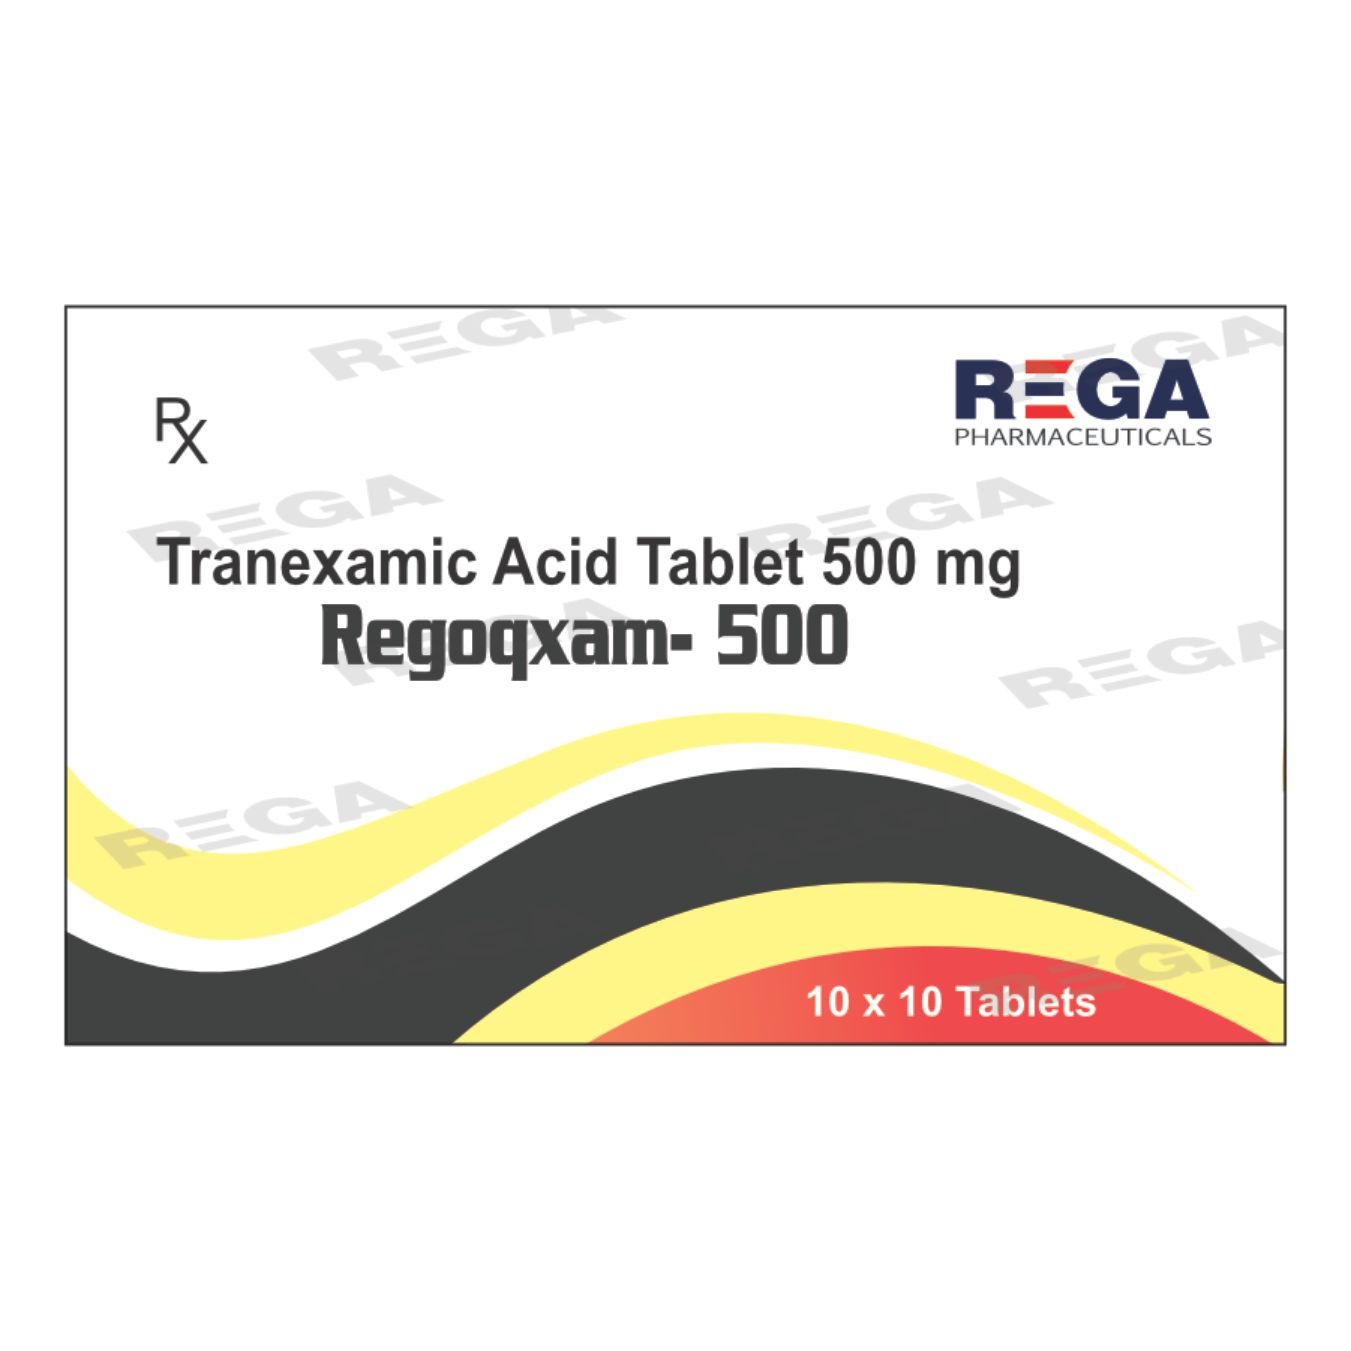 Tranexamic Acid Tablet 500 mg